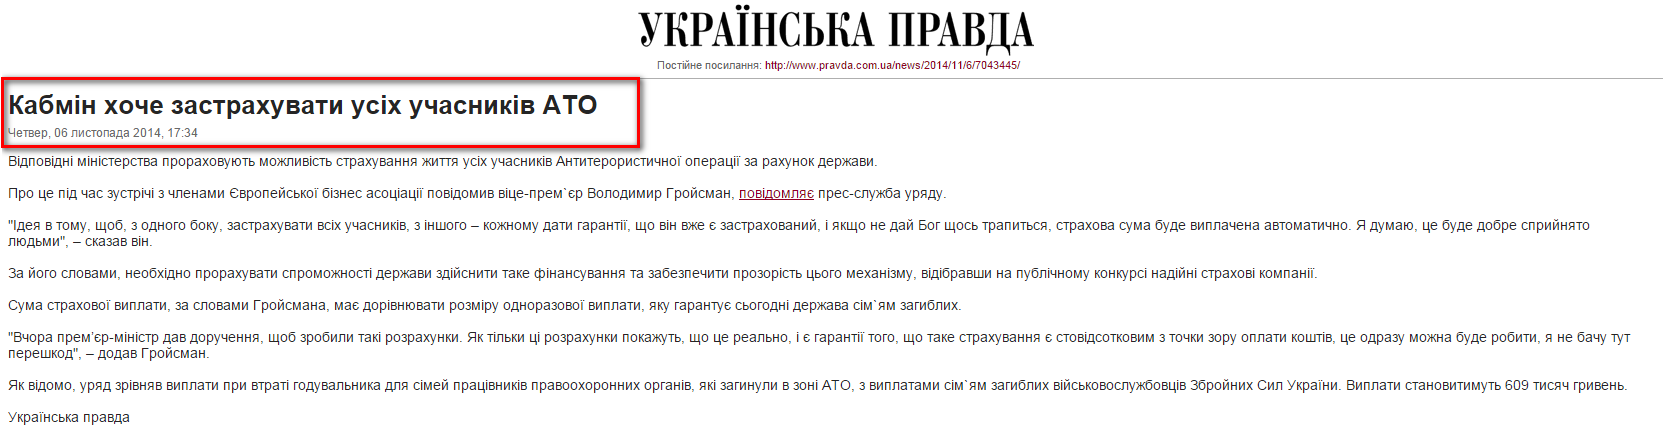 http://www.pravda.com.ua/news/2014/11/6/7043445/view_print/